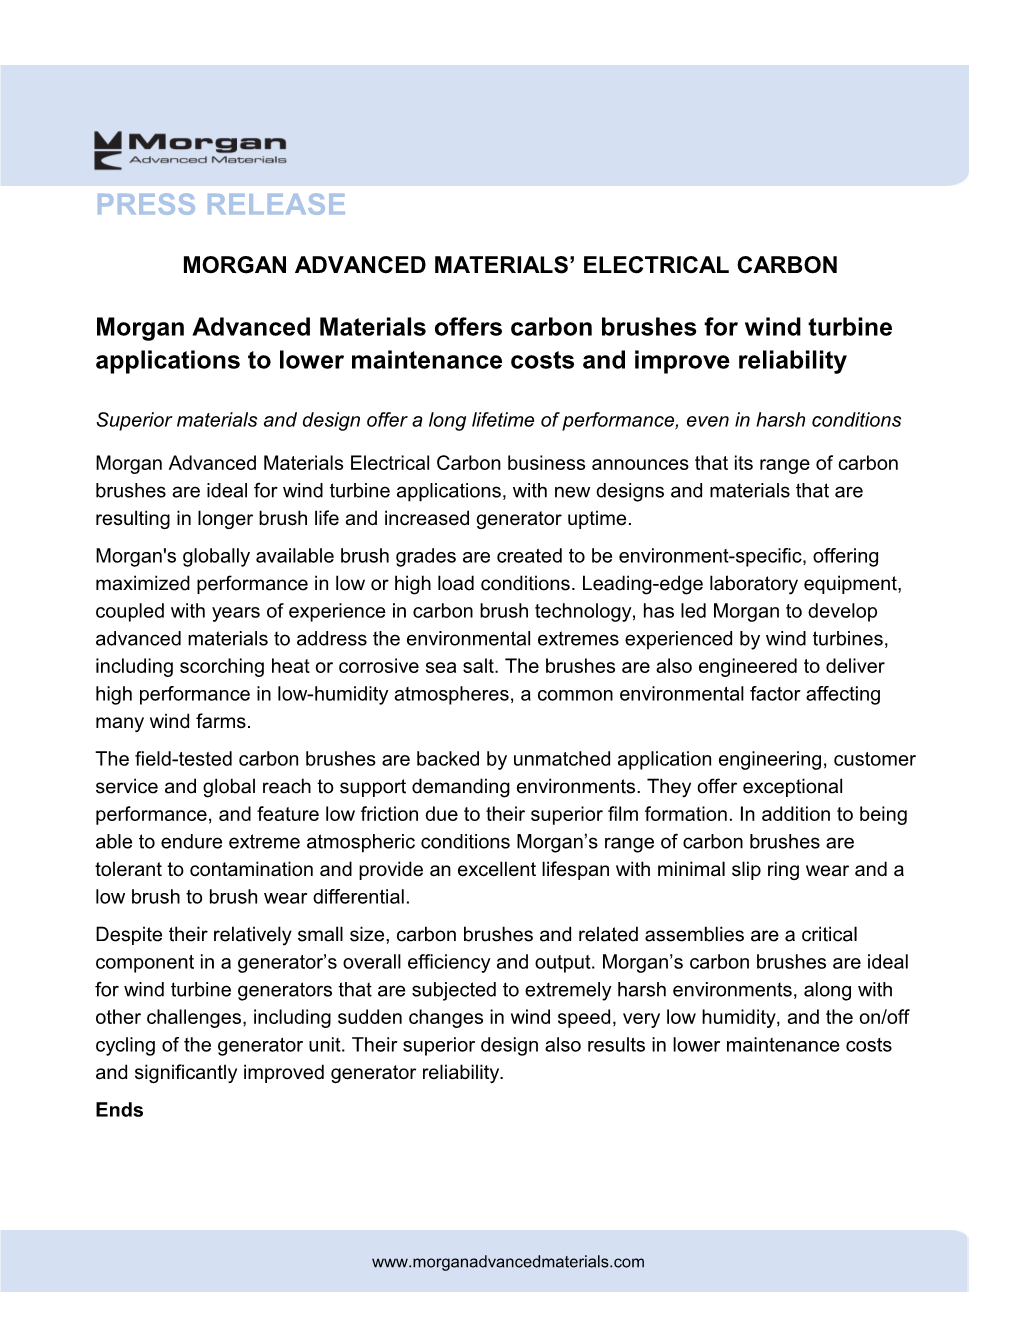 Morgan Advanced Materials Electrical Carbon